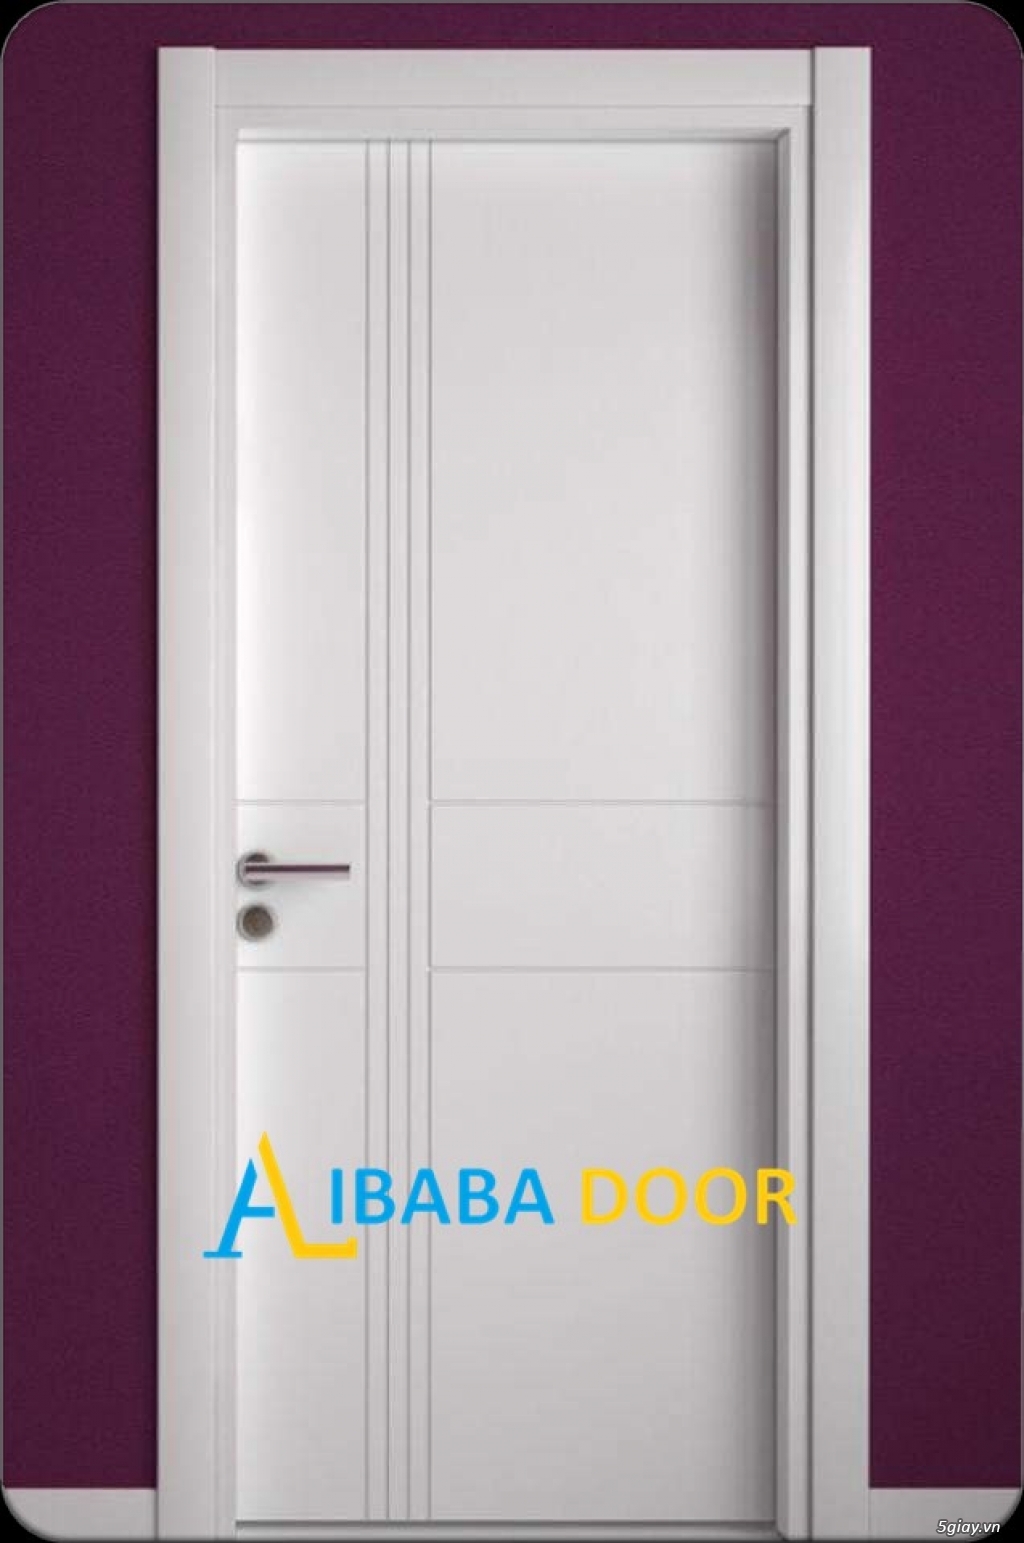 Alibabadoor chuyên cung cấp các loại cửa nhựa,cửa gỗ cho công trình - 3